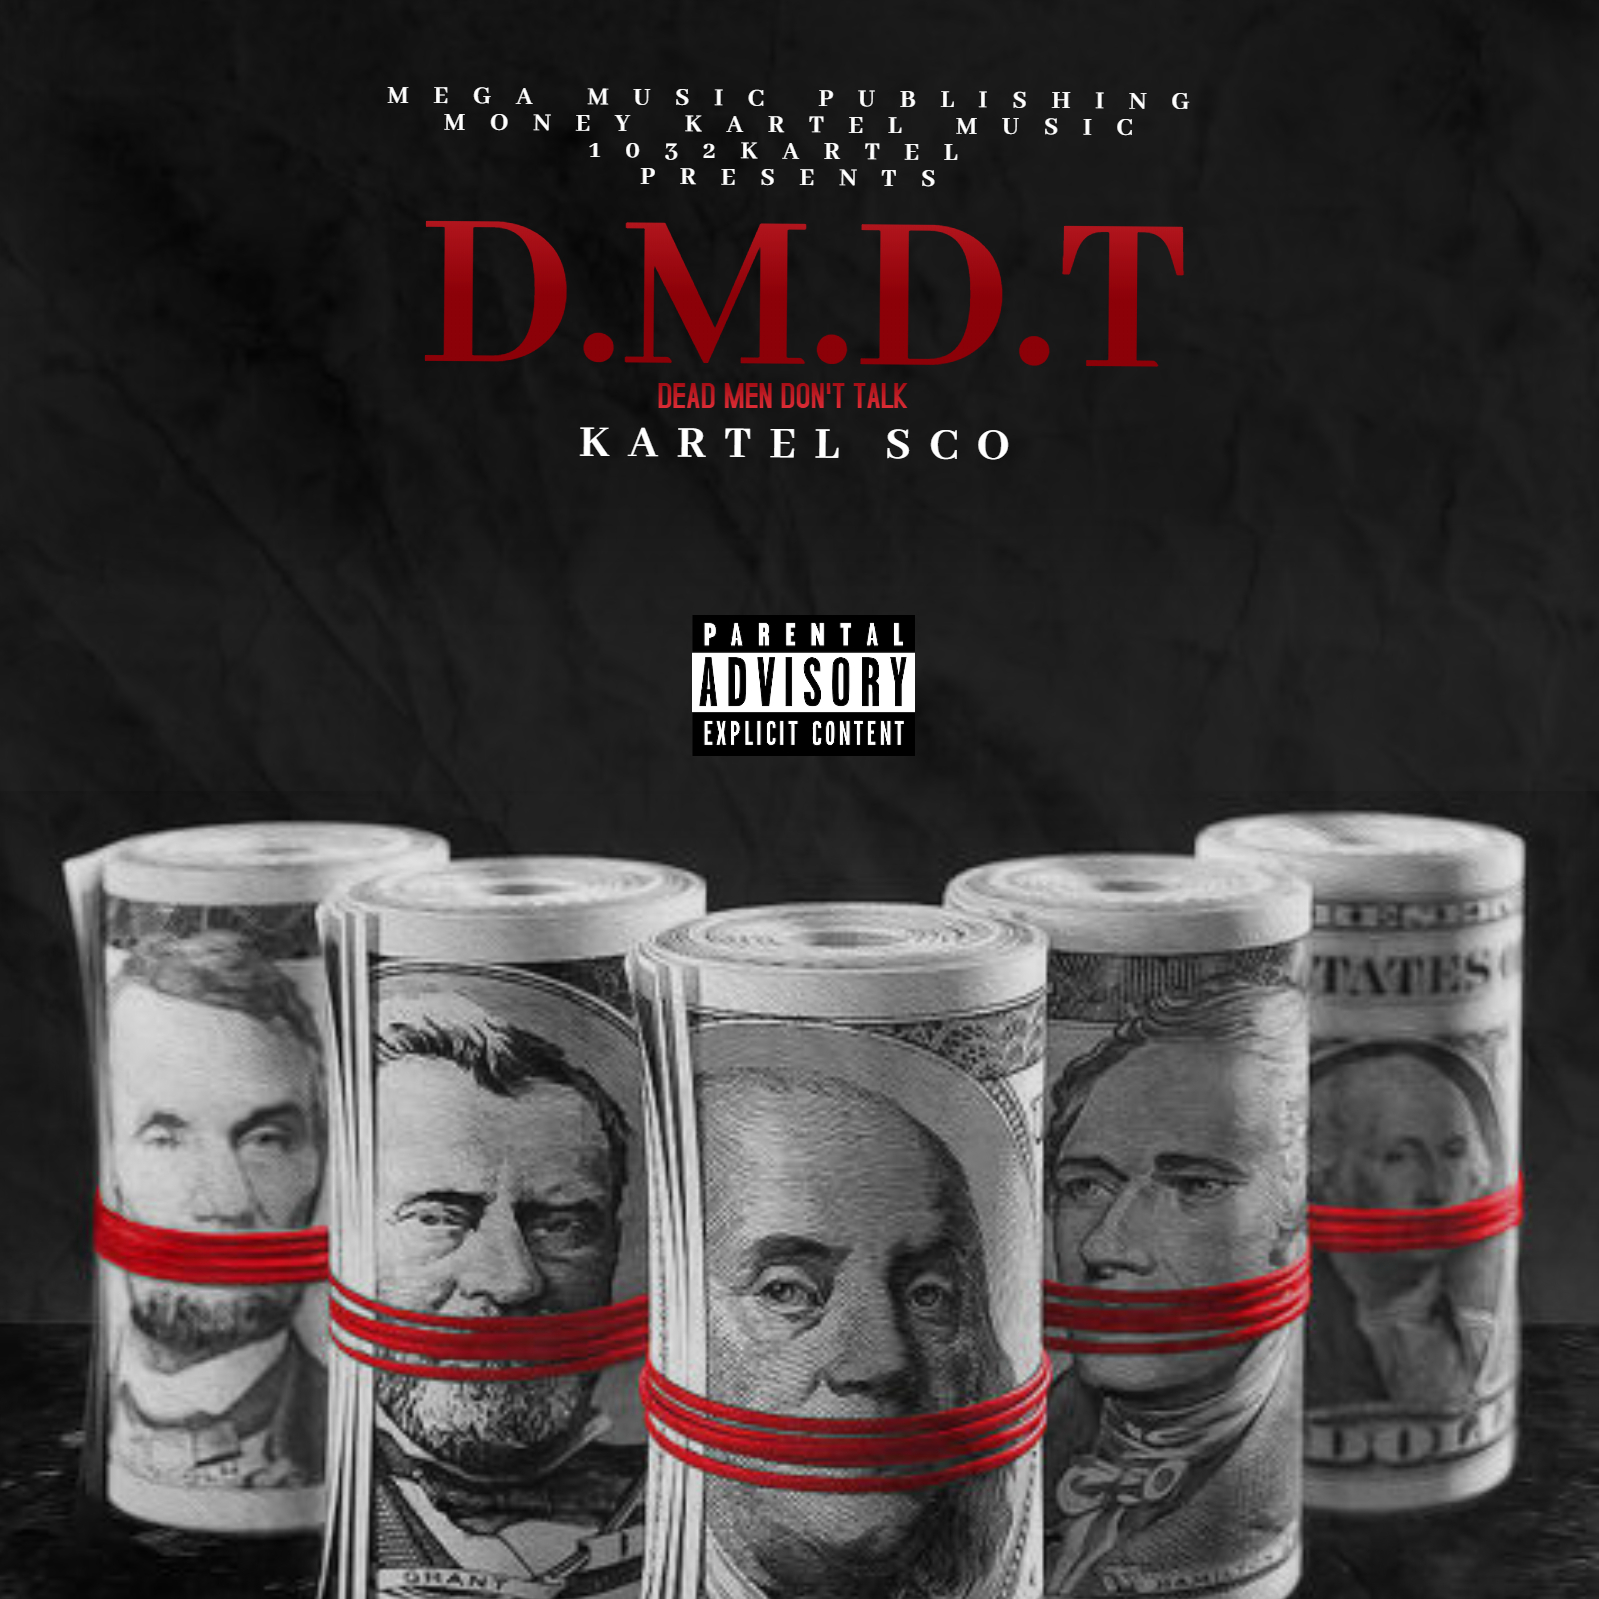 Kartel Sco announces 'D.M.D.T.' June 2020 mixtape